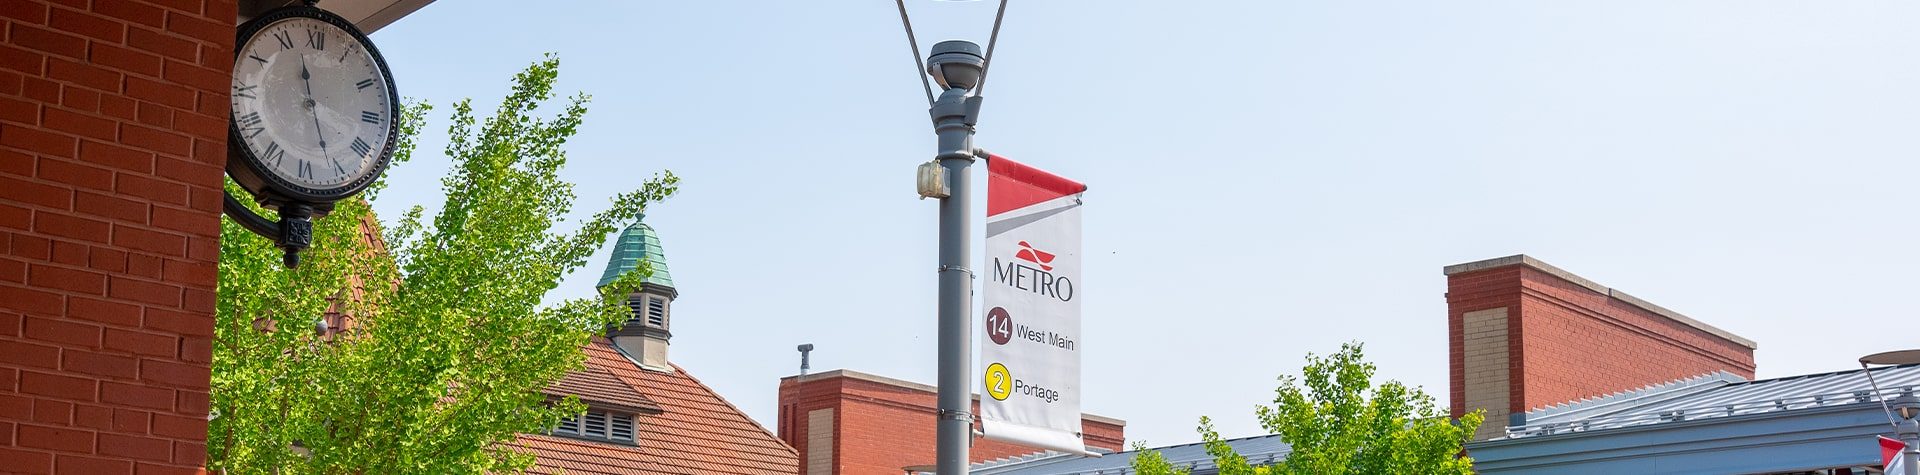 An image of a Kalamazoo Metro banner at the Kalamazoo Transportation Center.